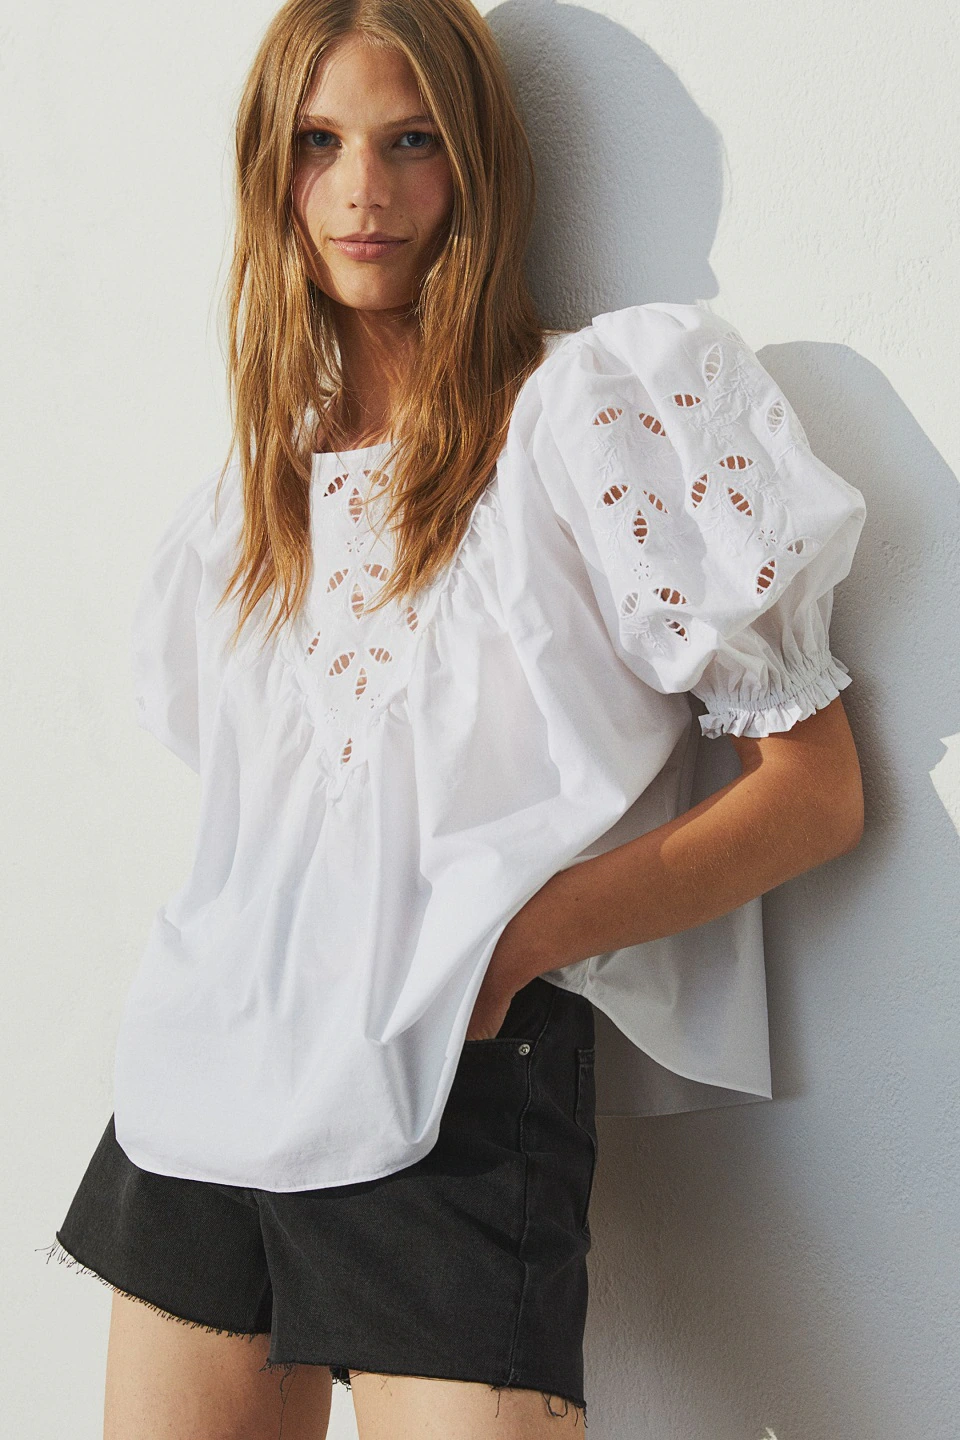 Fotos: Las blusas blancas de la nueva colección H&M son un flechazo y sientan de a cualquier edad | Hoy